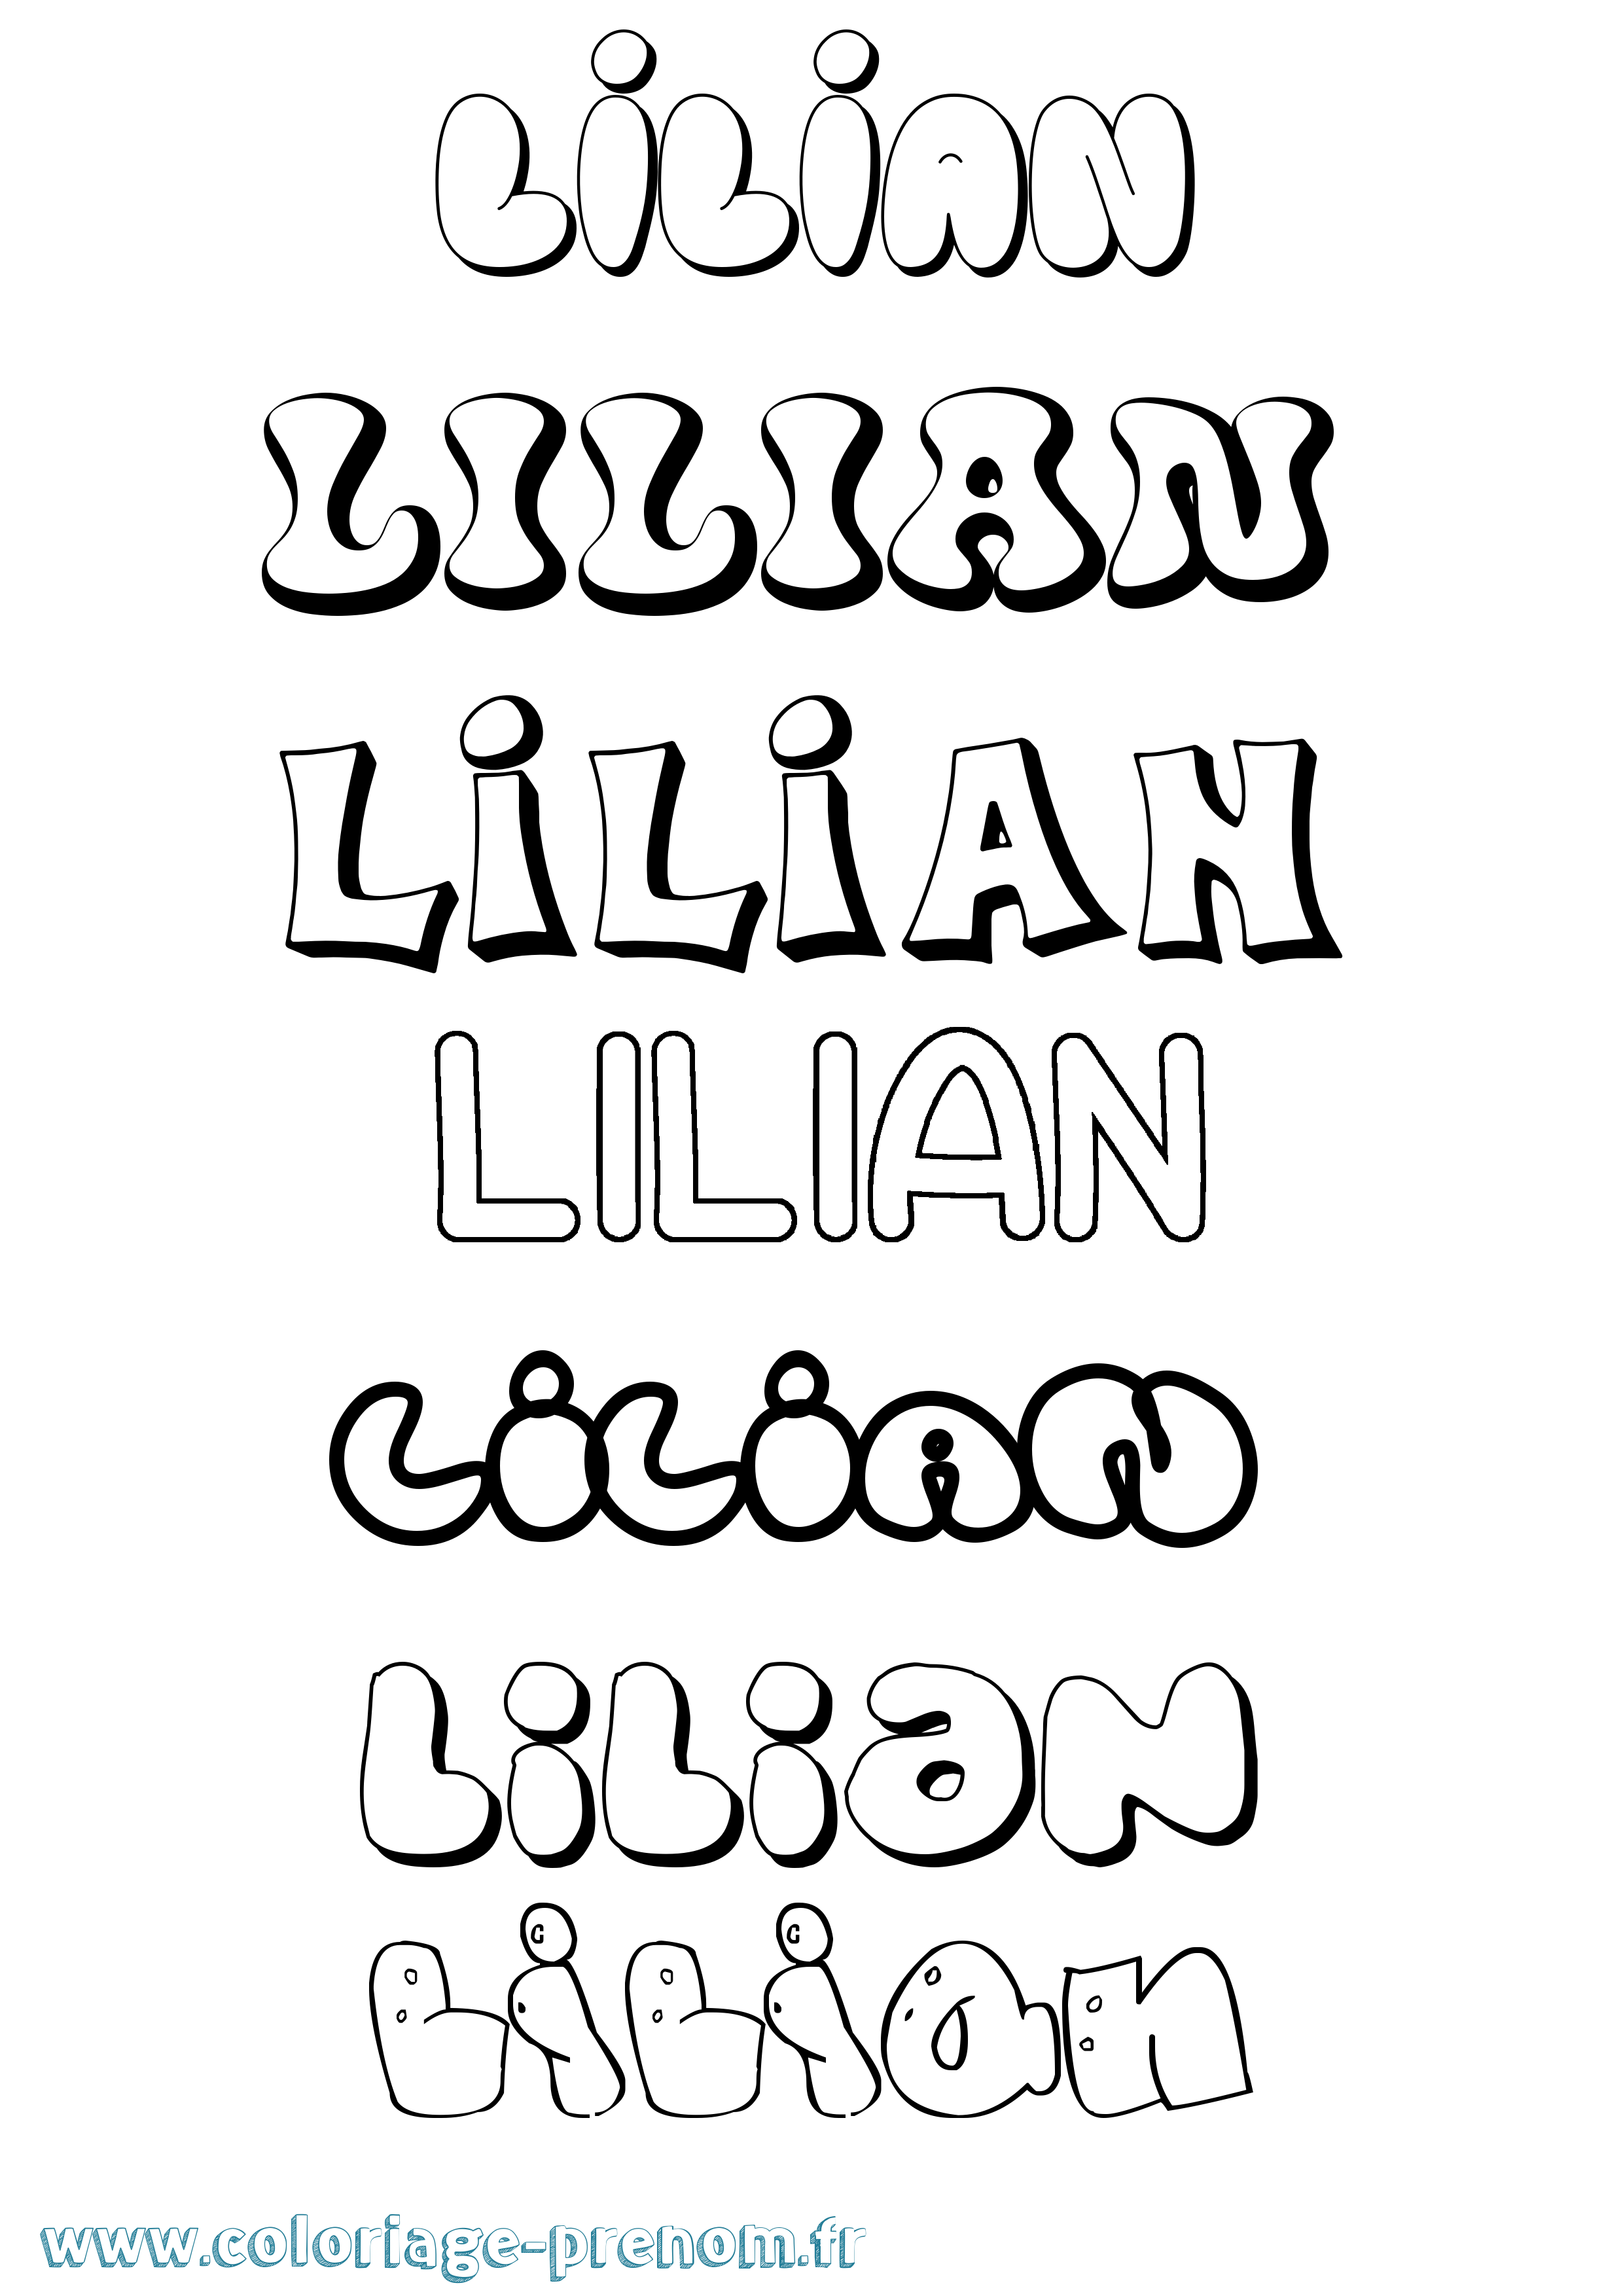 Coloriage prénom Lilian Bubble